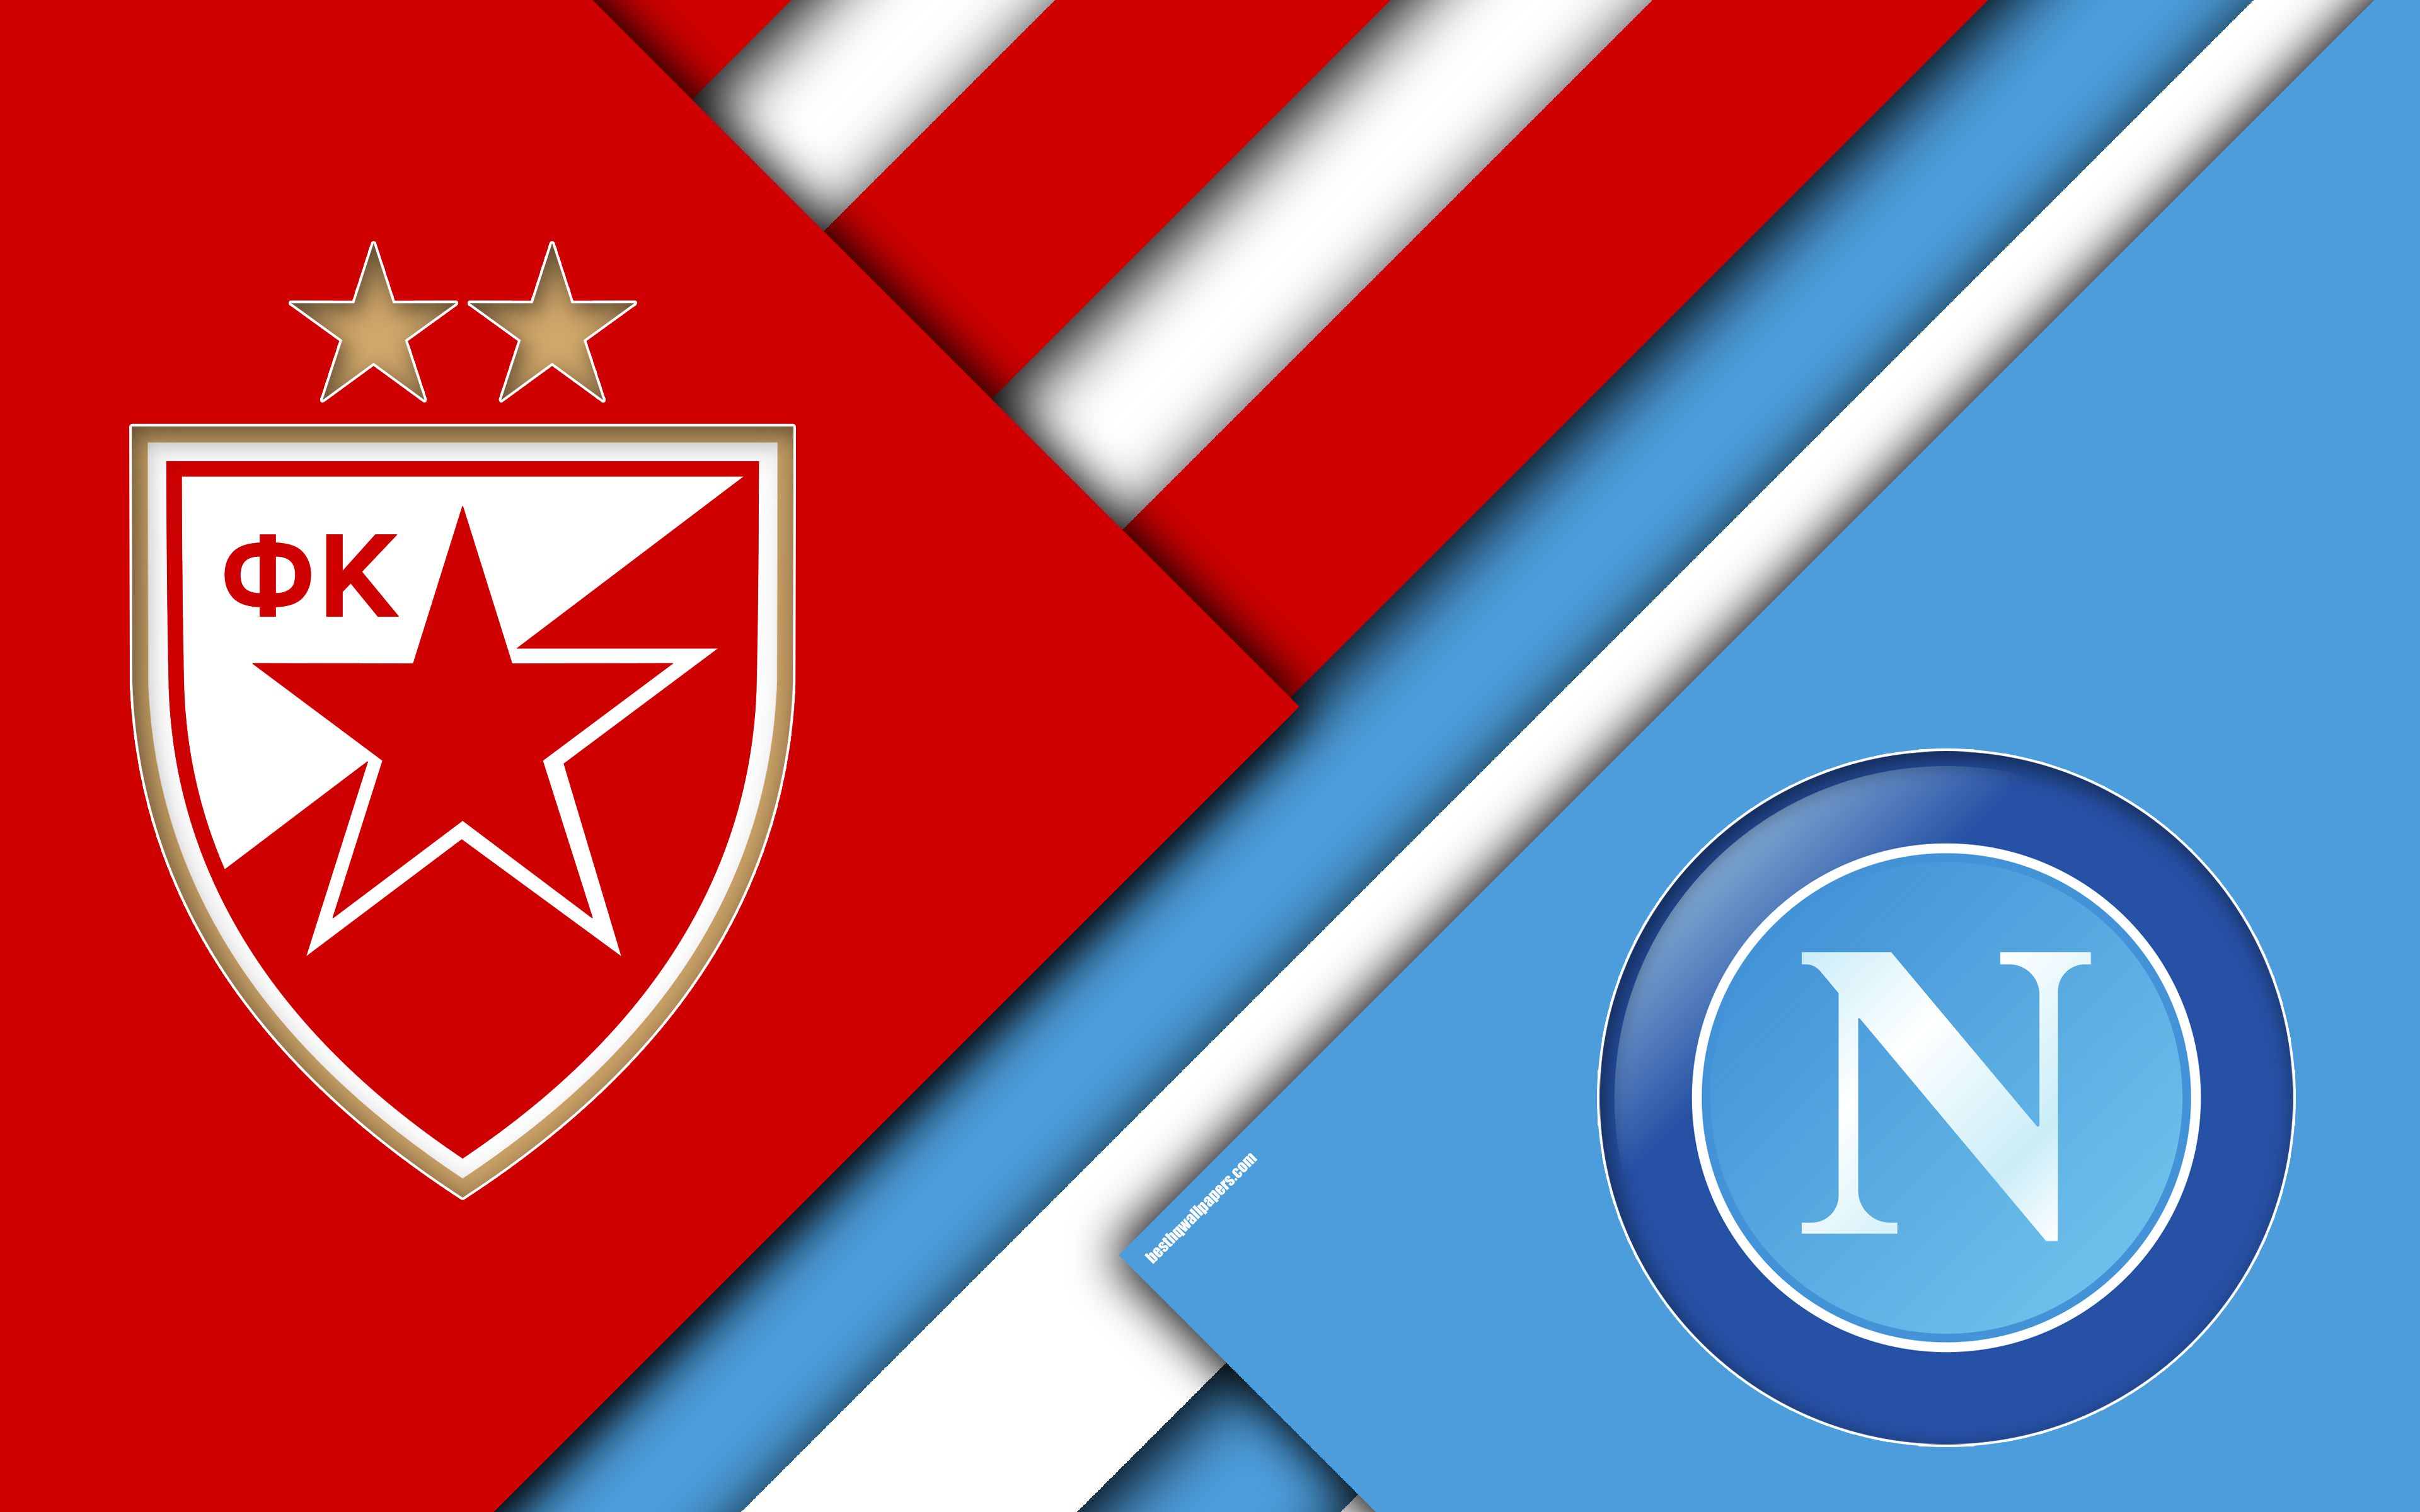 Download wallpaper K Crvena zvezda vs SSC Napoli, 4k, material